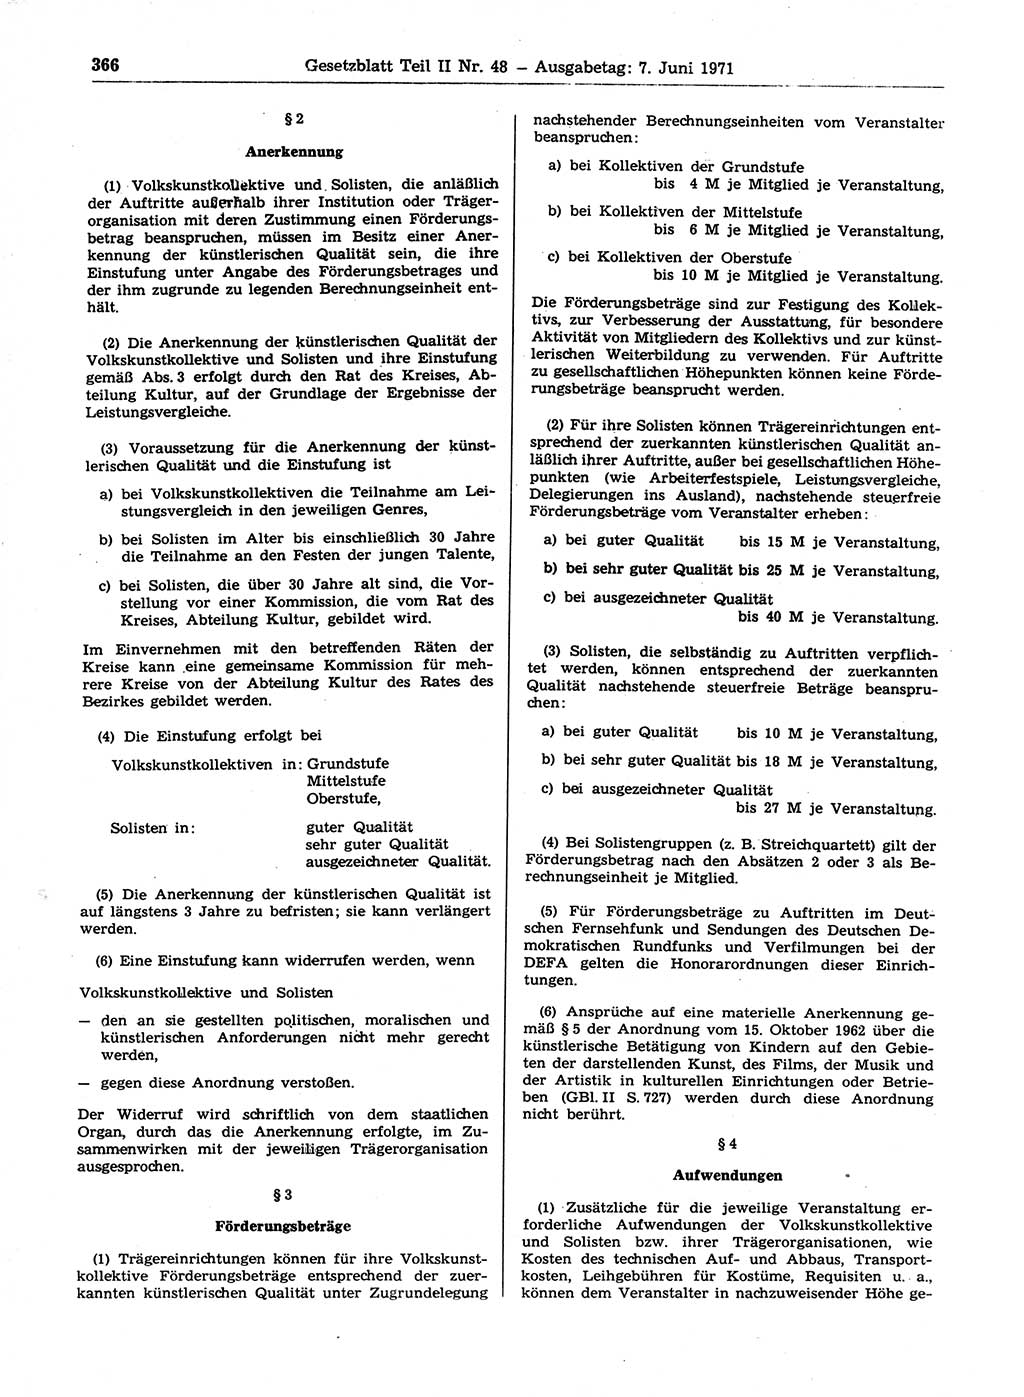 Gesetzblatt (GBl.) der Deutschen Demokratischen Republik (DDR) Teil ⅠⅠ 1971, Seite 366 (GBl. DDR ⅠⅠ 1971, S. 366)